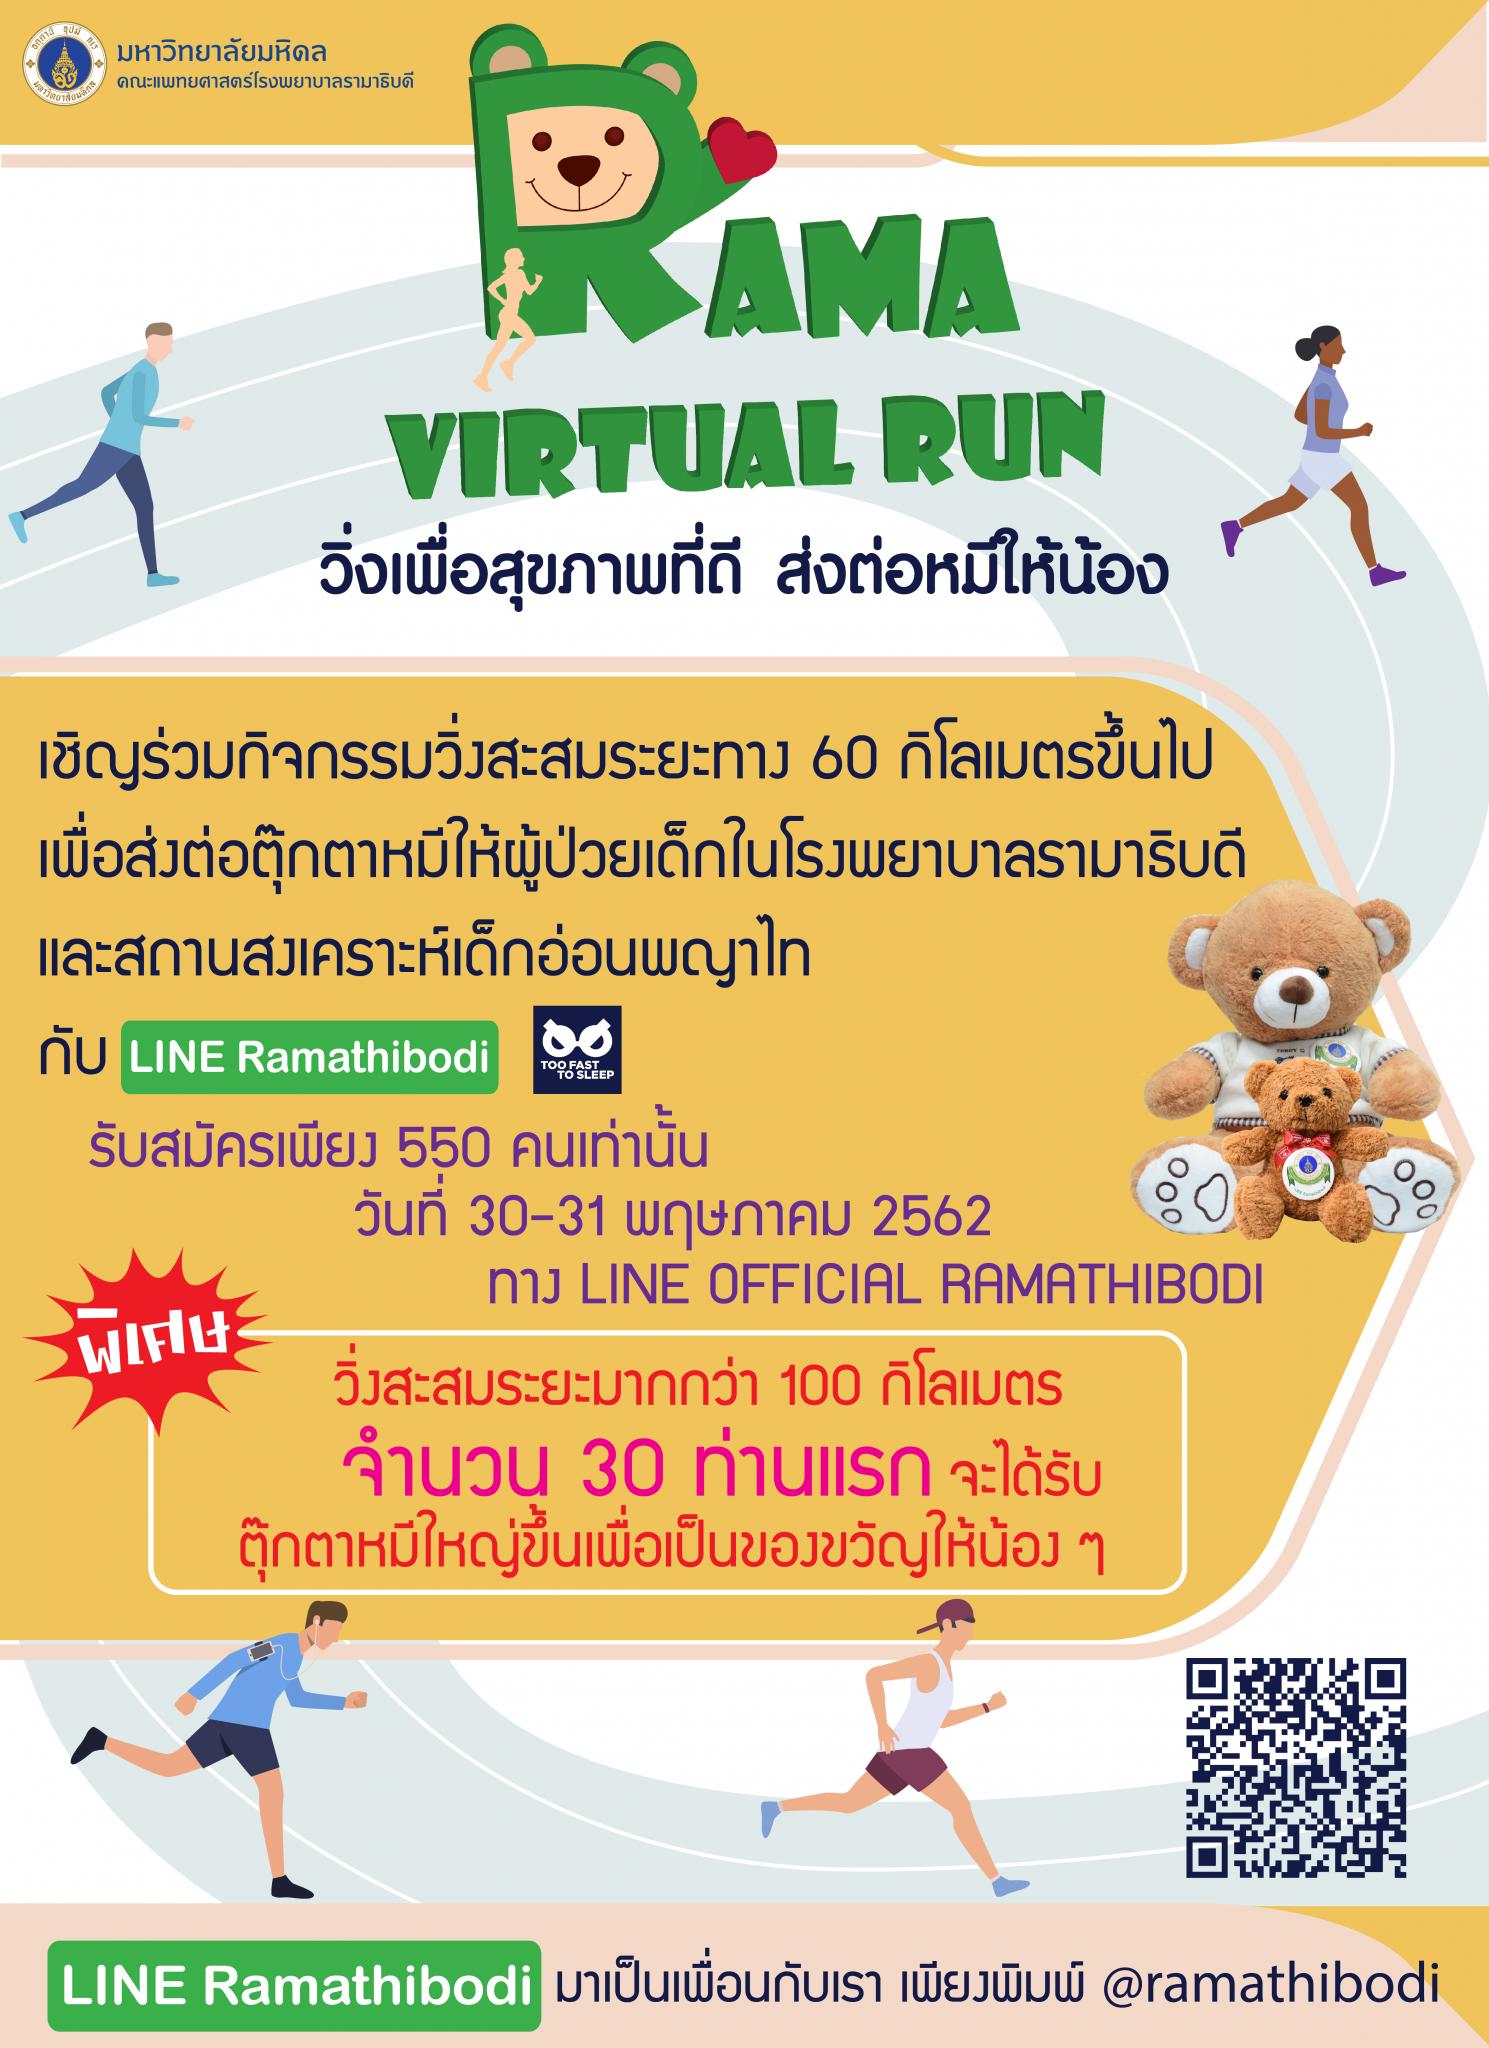 Rama Virtual Run วิ่งเพื่อสุขภาพที่ดี ส่งต่อหมีให้น้อง